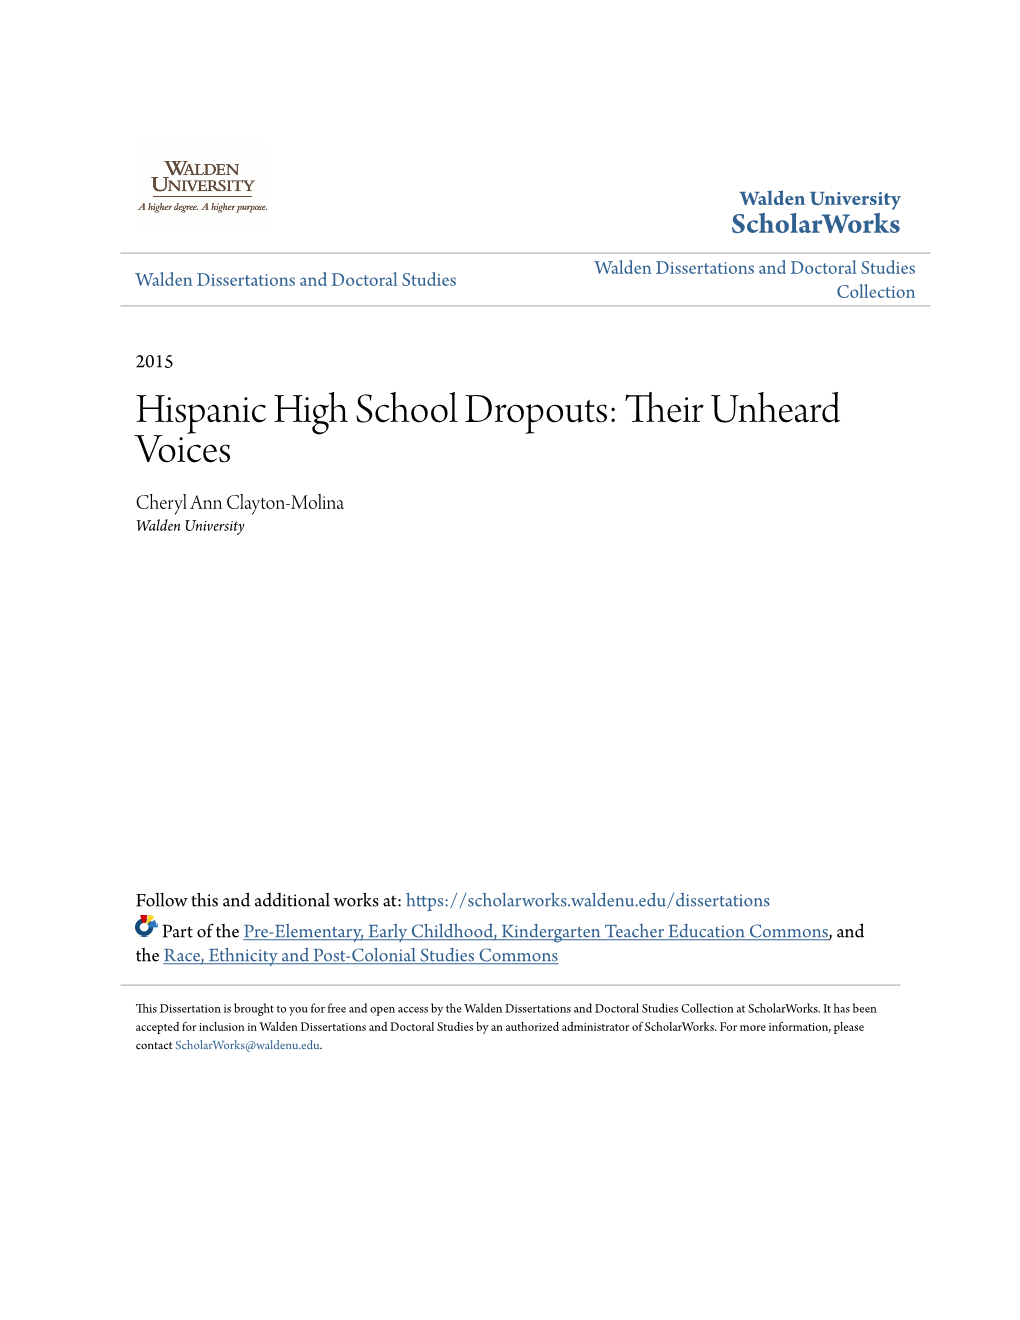 Hispanic High School Dropouts: Their Unheard Voices